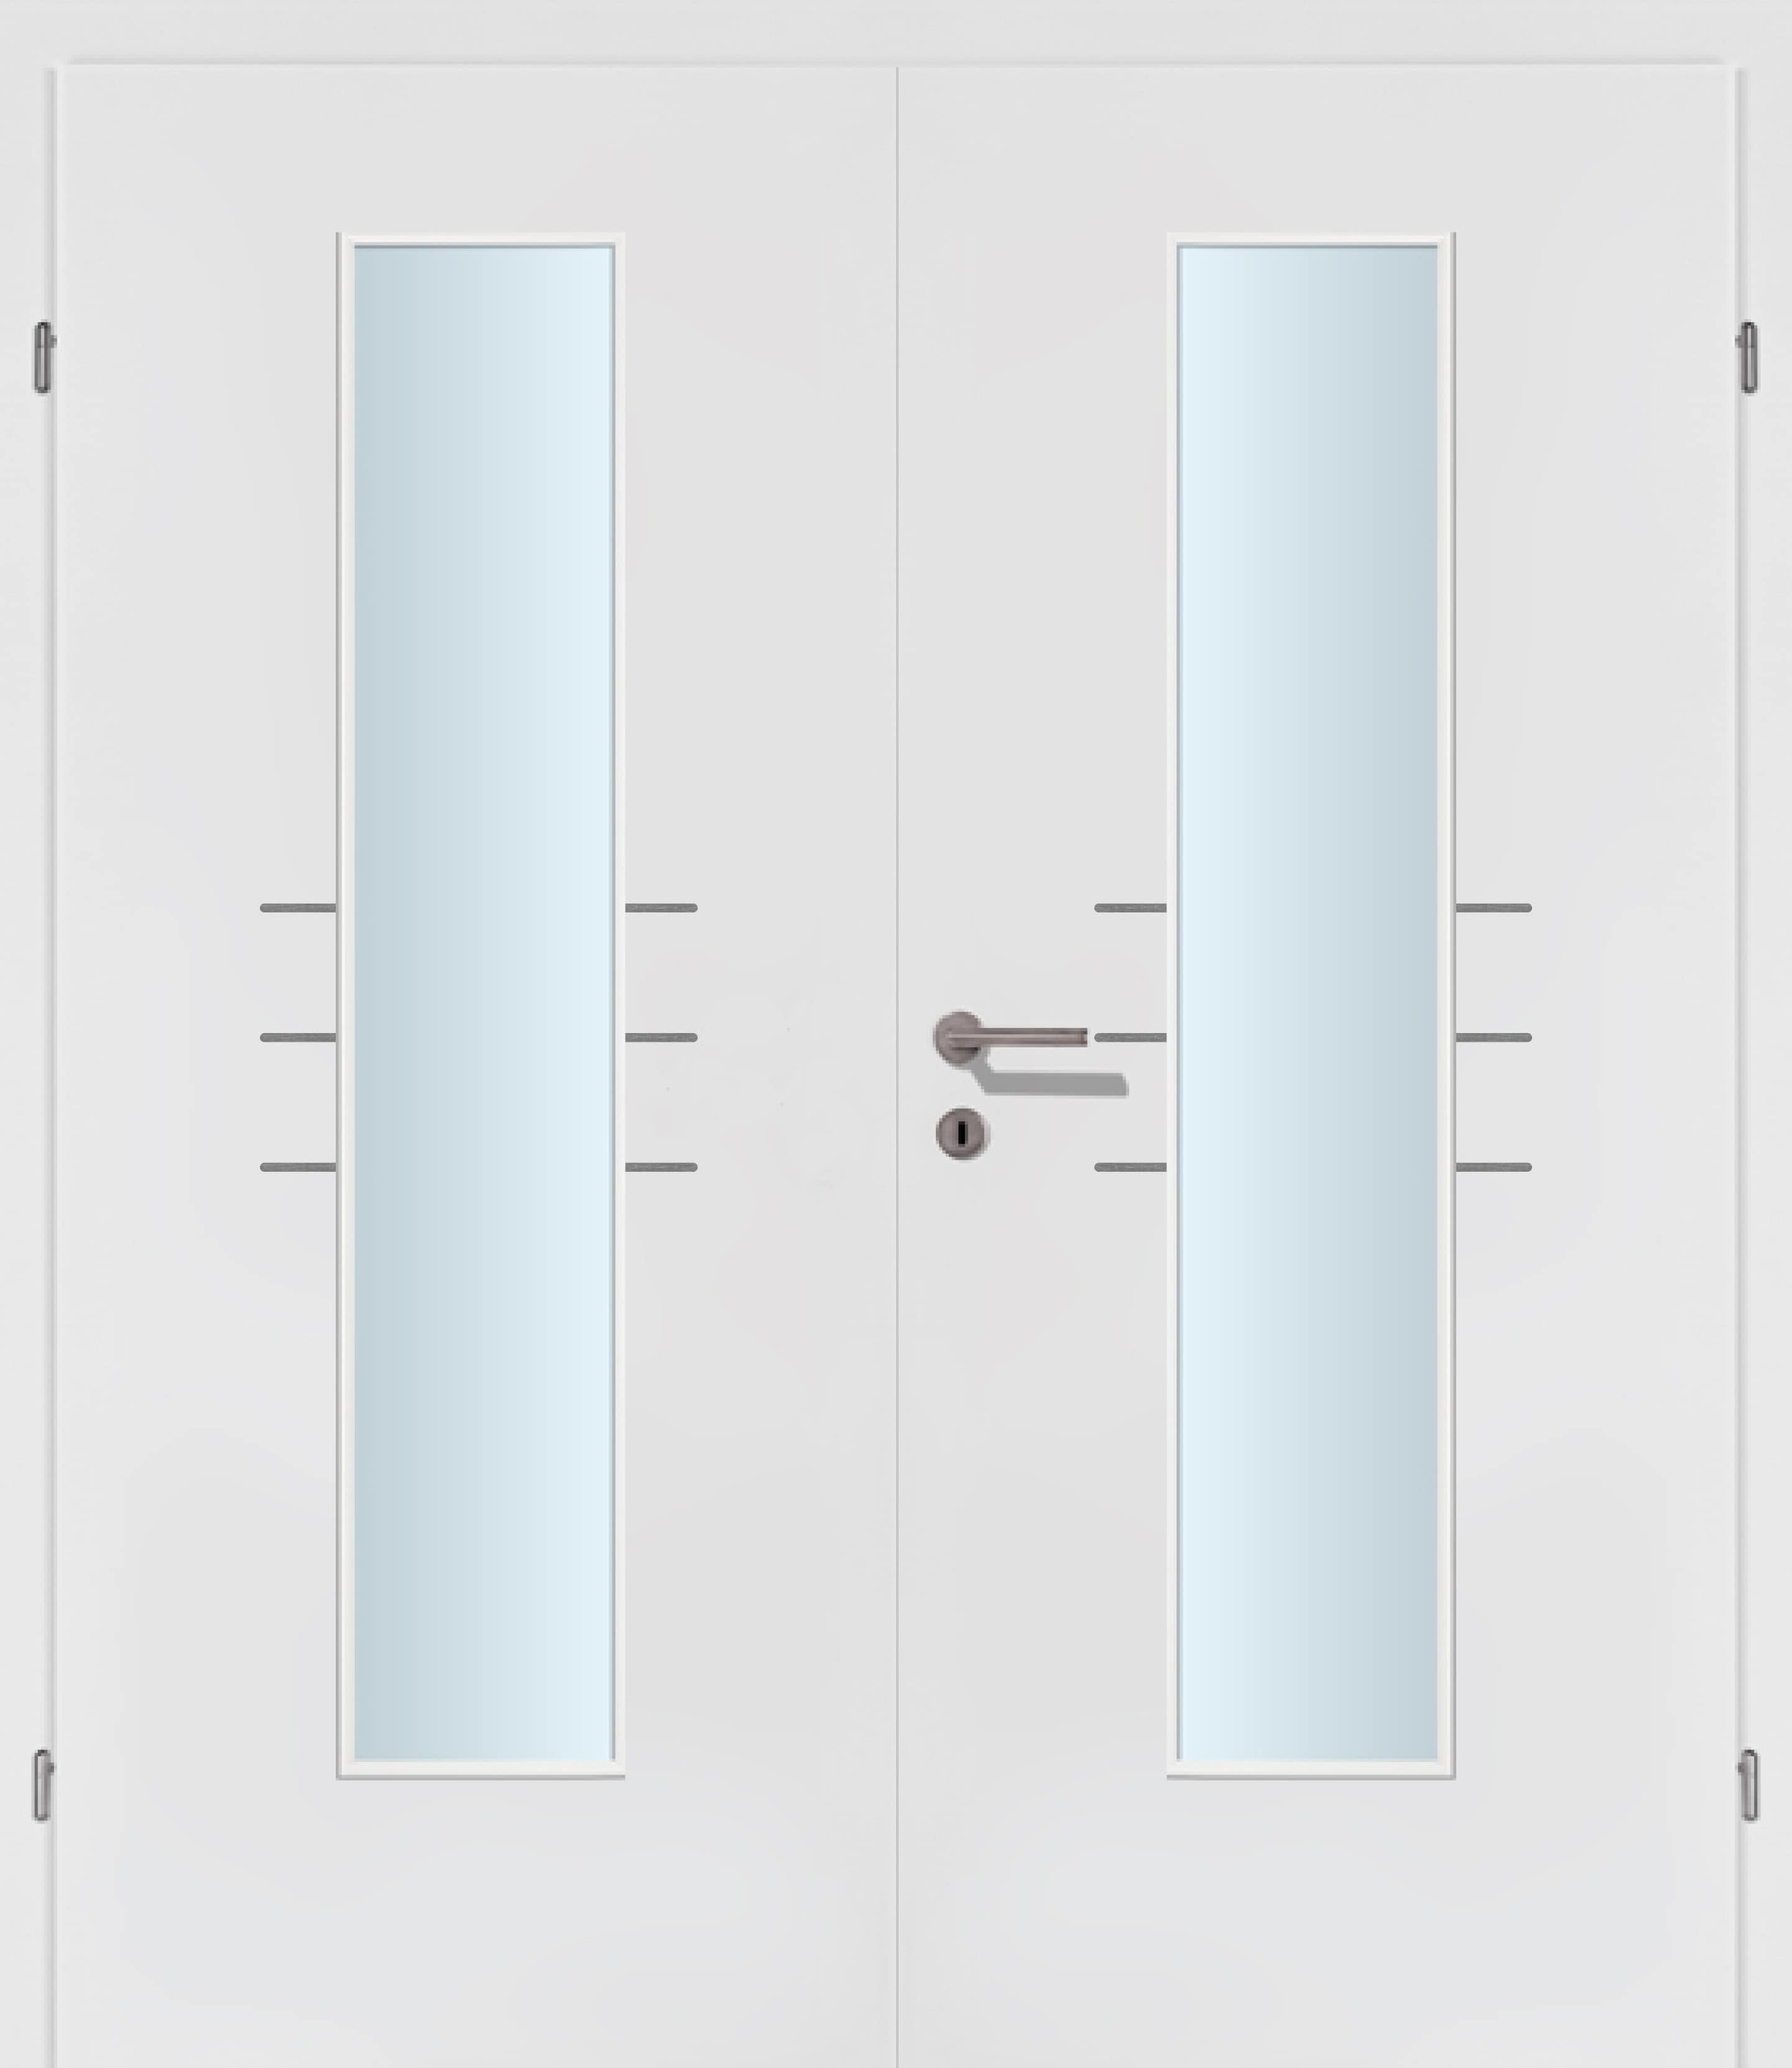 Selektion T50 Alu Effekt Lisenen weiss Innentür Inkl. Zarge (Türrahmen) Doppeltüre Inkl. Glaslichte EN Mittig